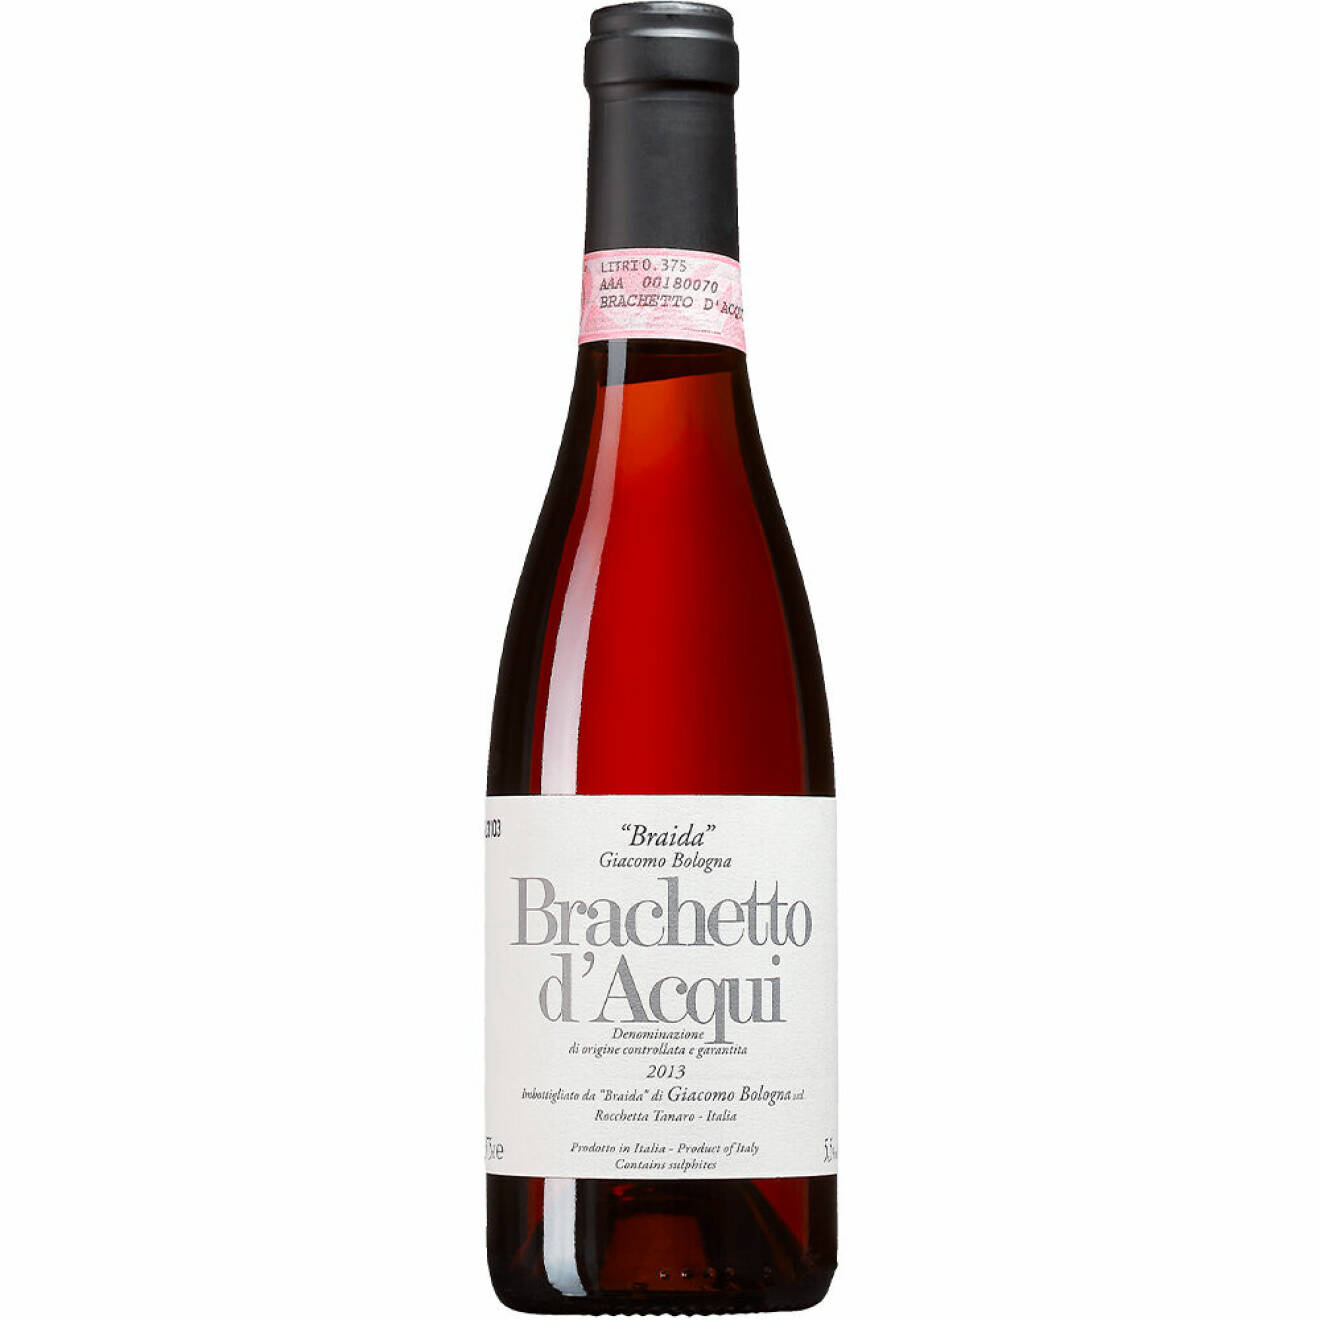 Brachetto d’Acqui Braida 2021, Italien, Piemonte (6260) 99 kr, 375 ml.